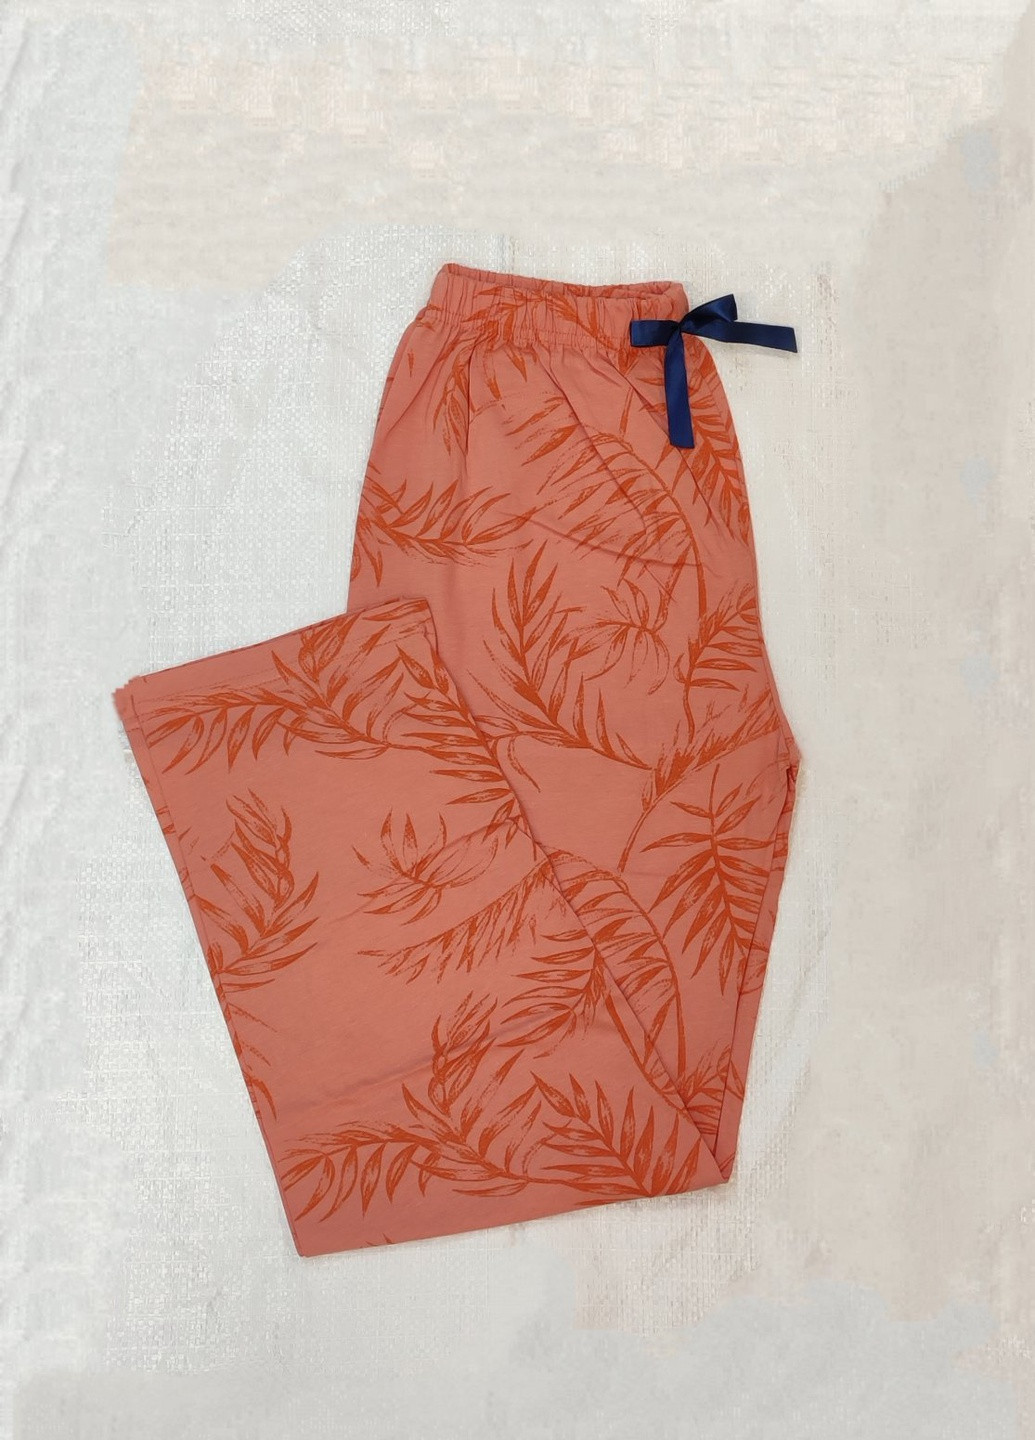 Оранжевые домашние демисезонные брюки Boyraz Pijama